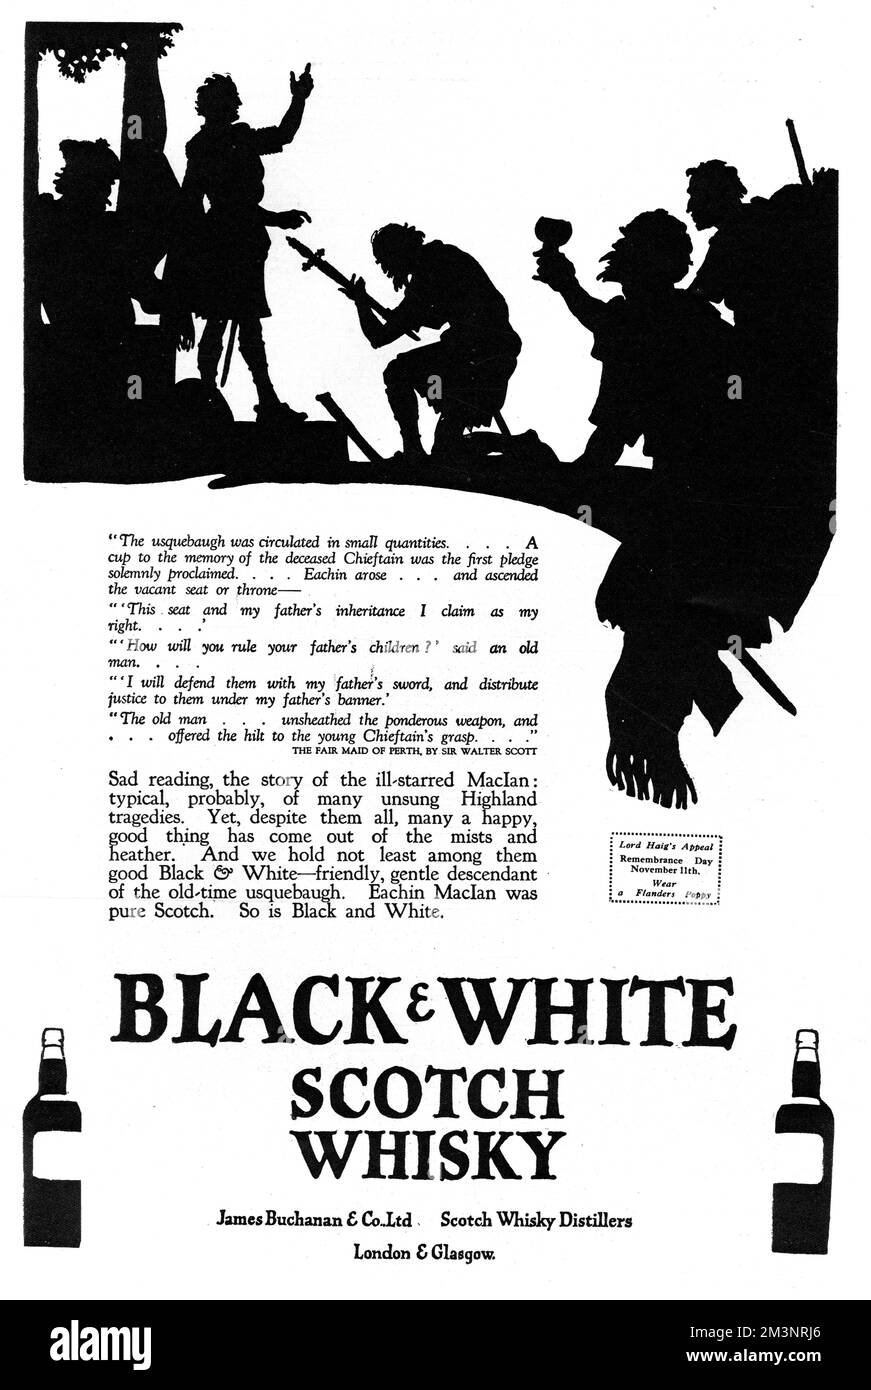 Werbung für Black &amp; White Scotch Whisky, mit einer feinen Silhouette von Eachin MacIan, der sein Erbe als Highland Chieftain übernimmt. Ein alter Mann, gerührt von seinen edlen Worten, bietet MacIan seine Klinge. Die Silhouette wird begleitet von einem Text von Sir Walter Scott, der die Szene beschreibt. Datum: 1927 Stockfoto